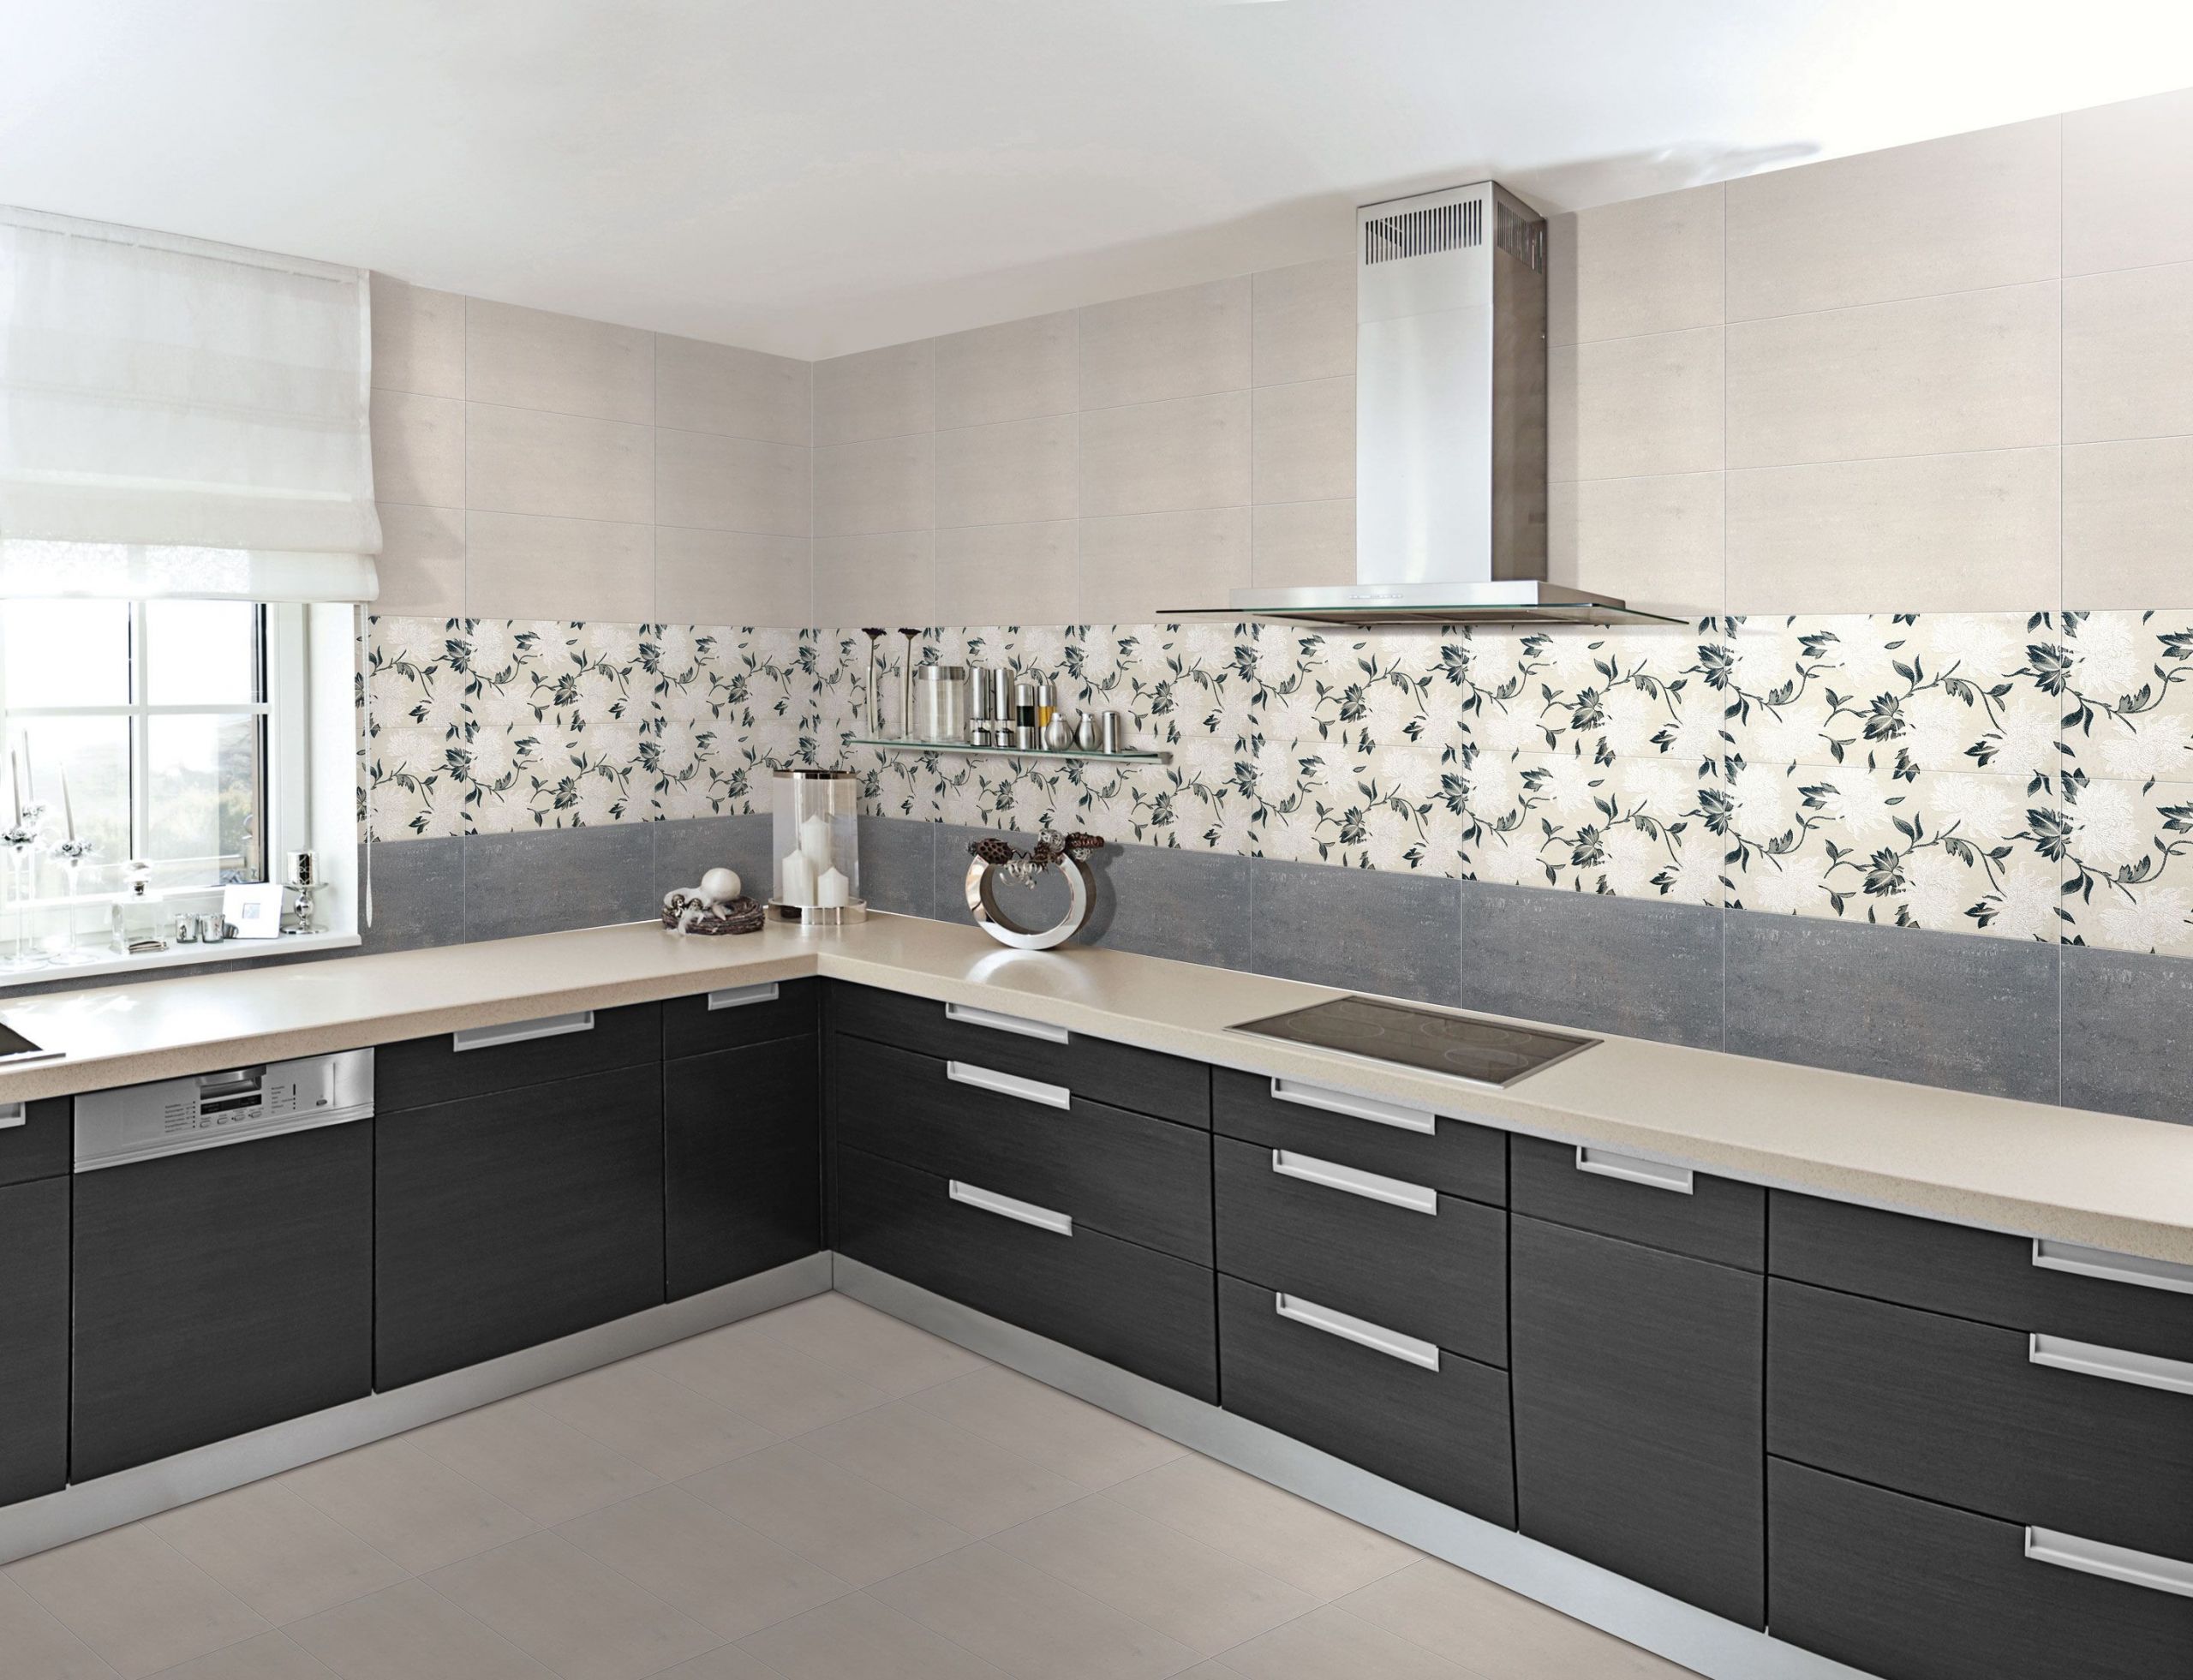 Kitchen Wall Tile Designs
 Buy Designer Floor Wall Tiles for Bathroom Bedroom